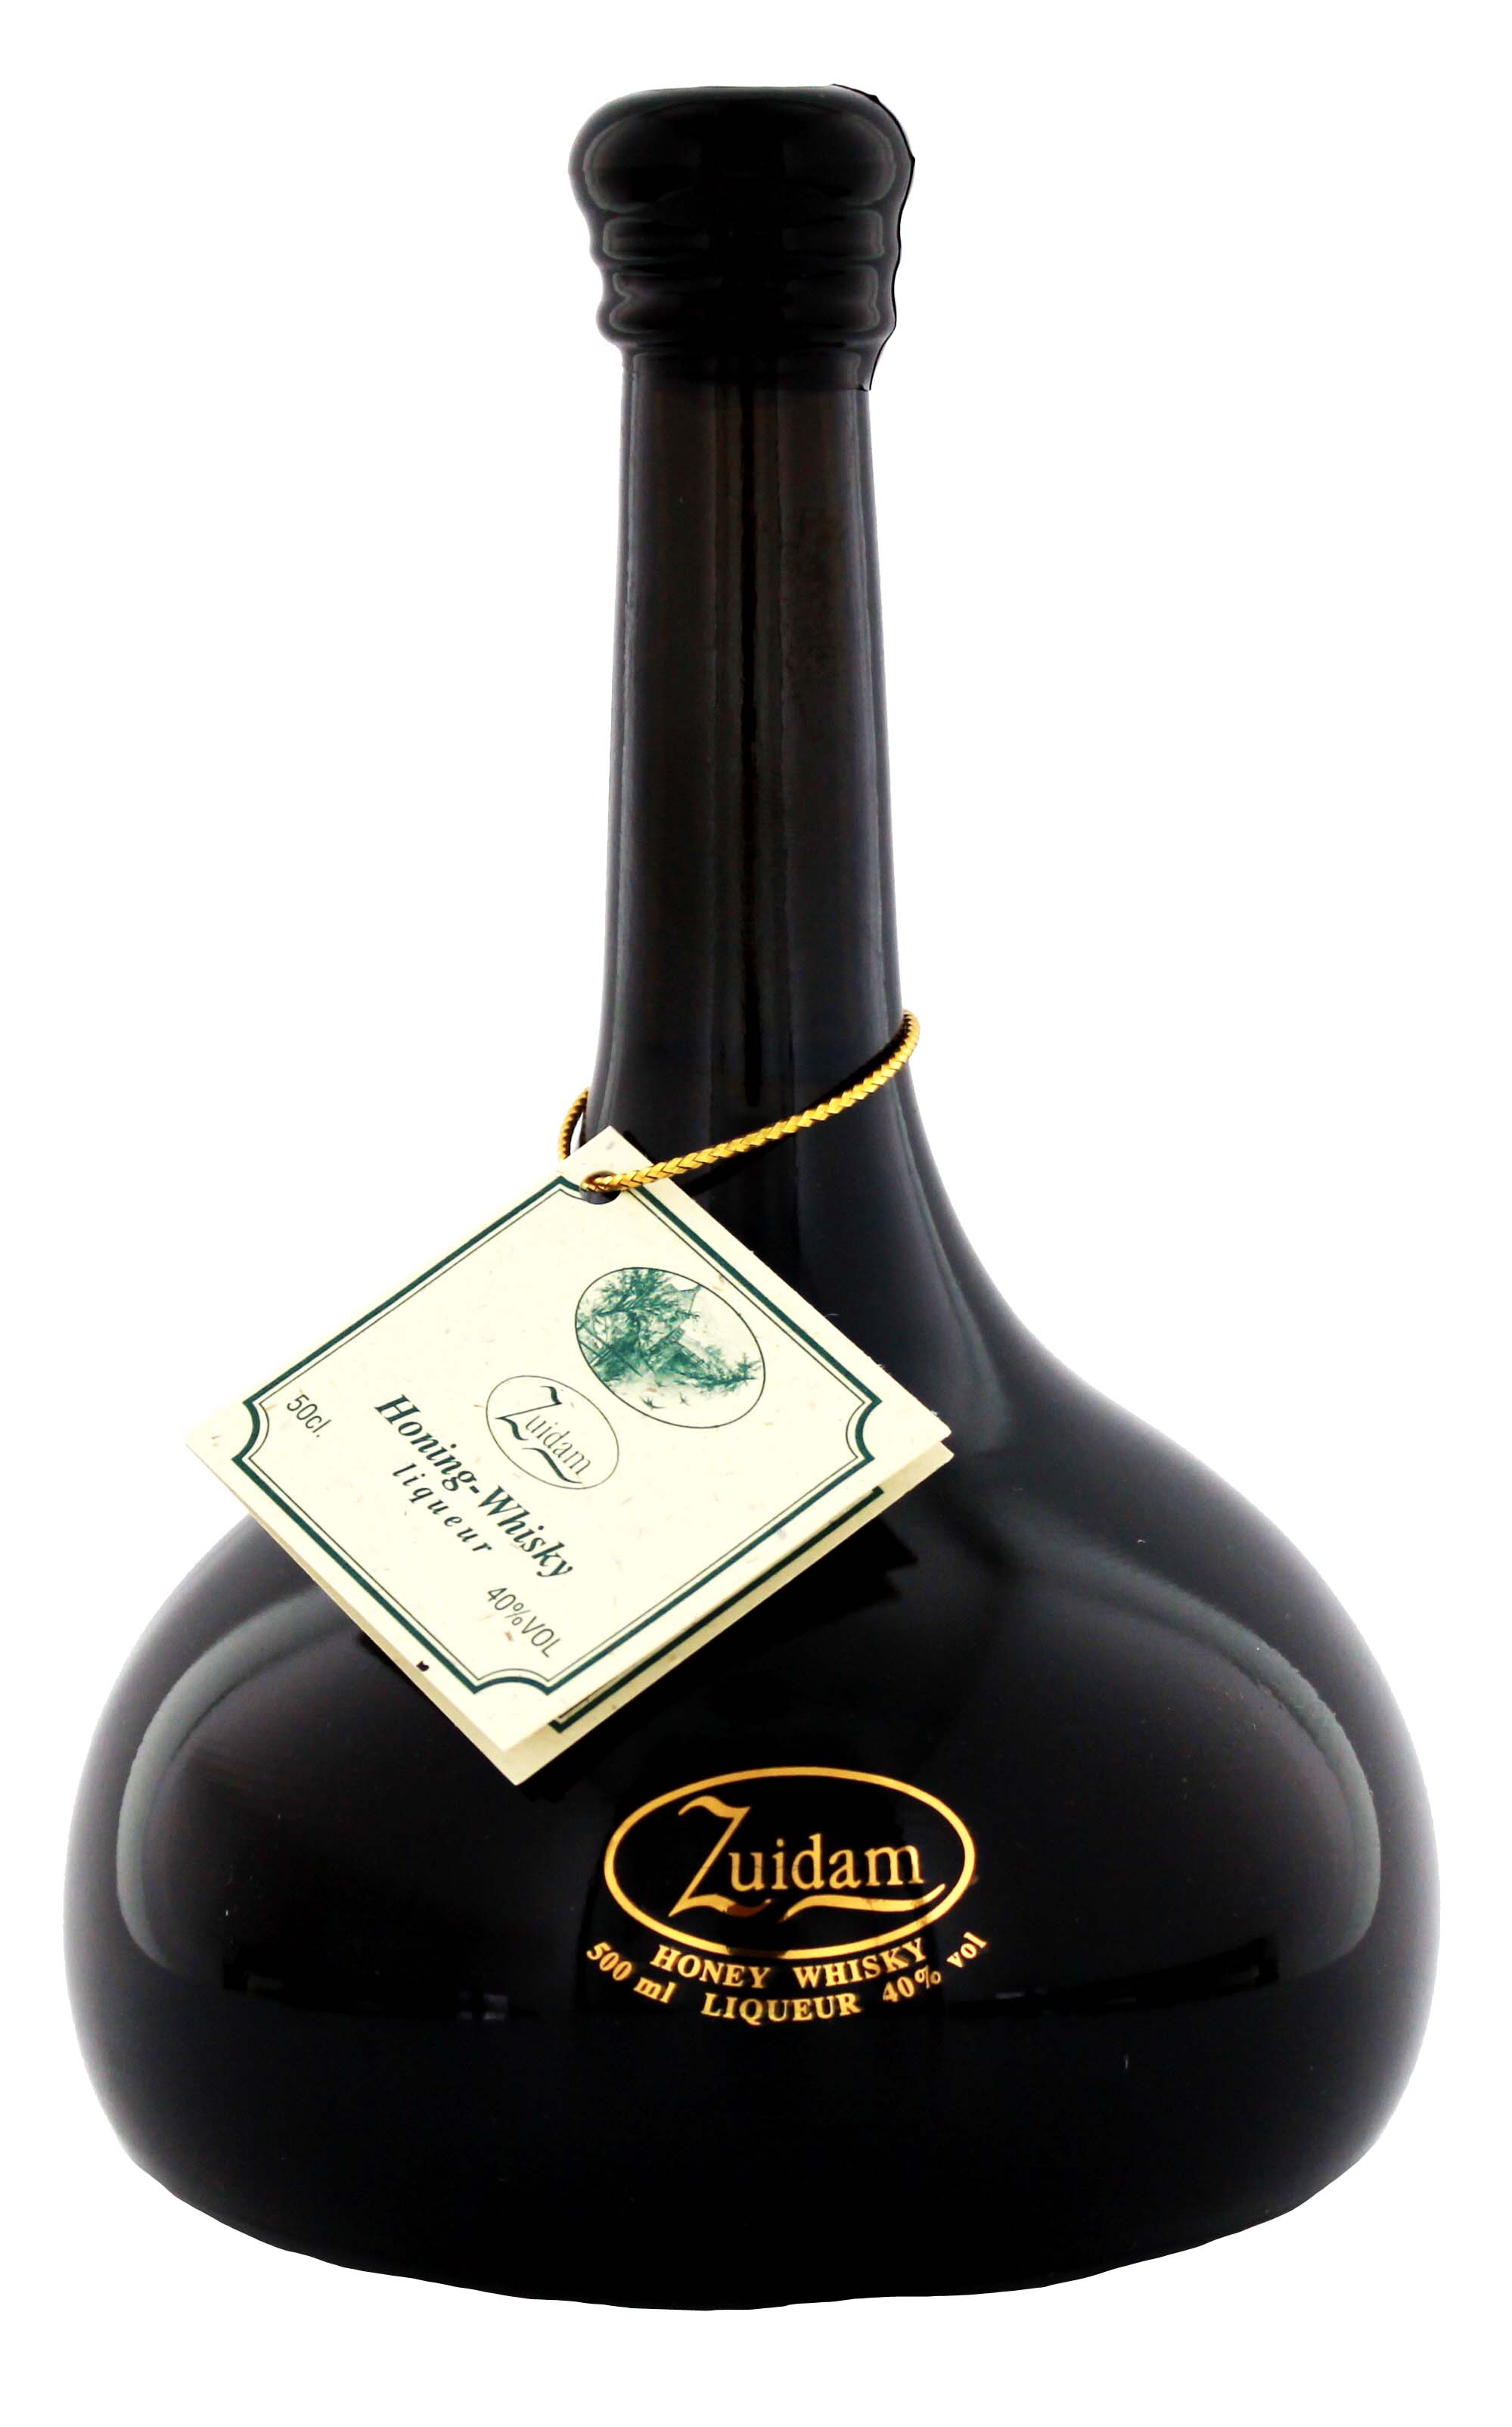 Zuidam Honig Whisky Liqueur jetzt kaufen im Drinkology Online Shop!